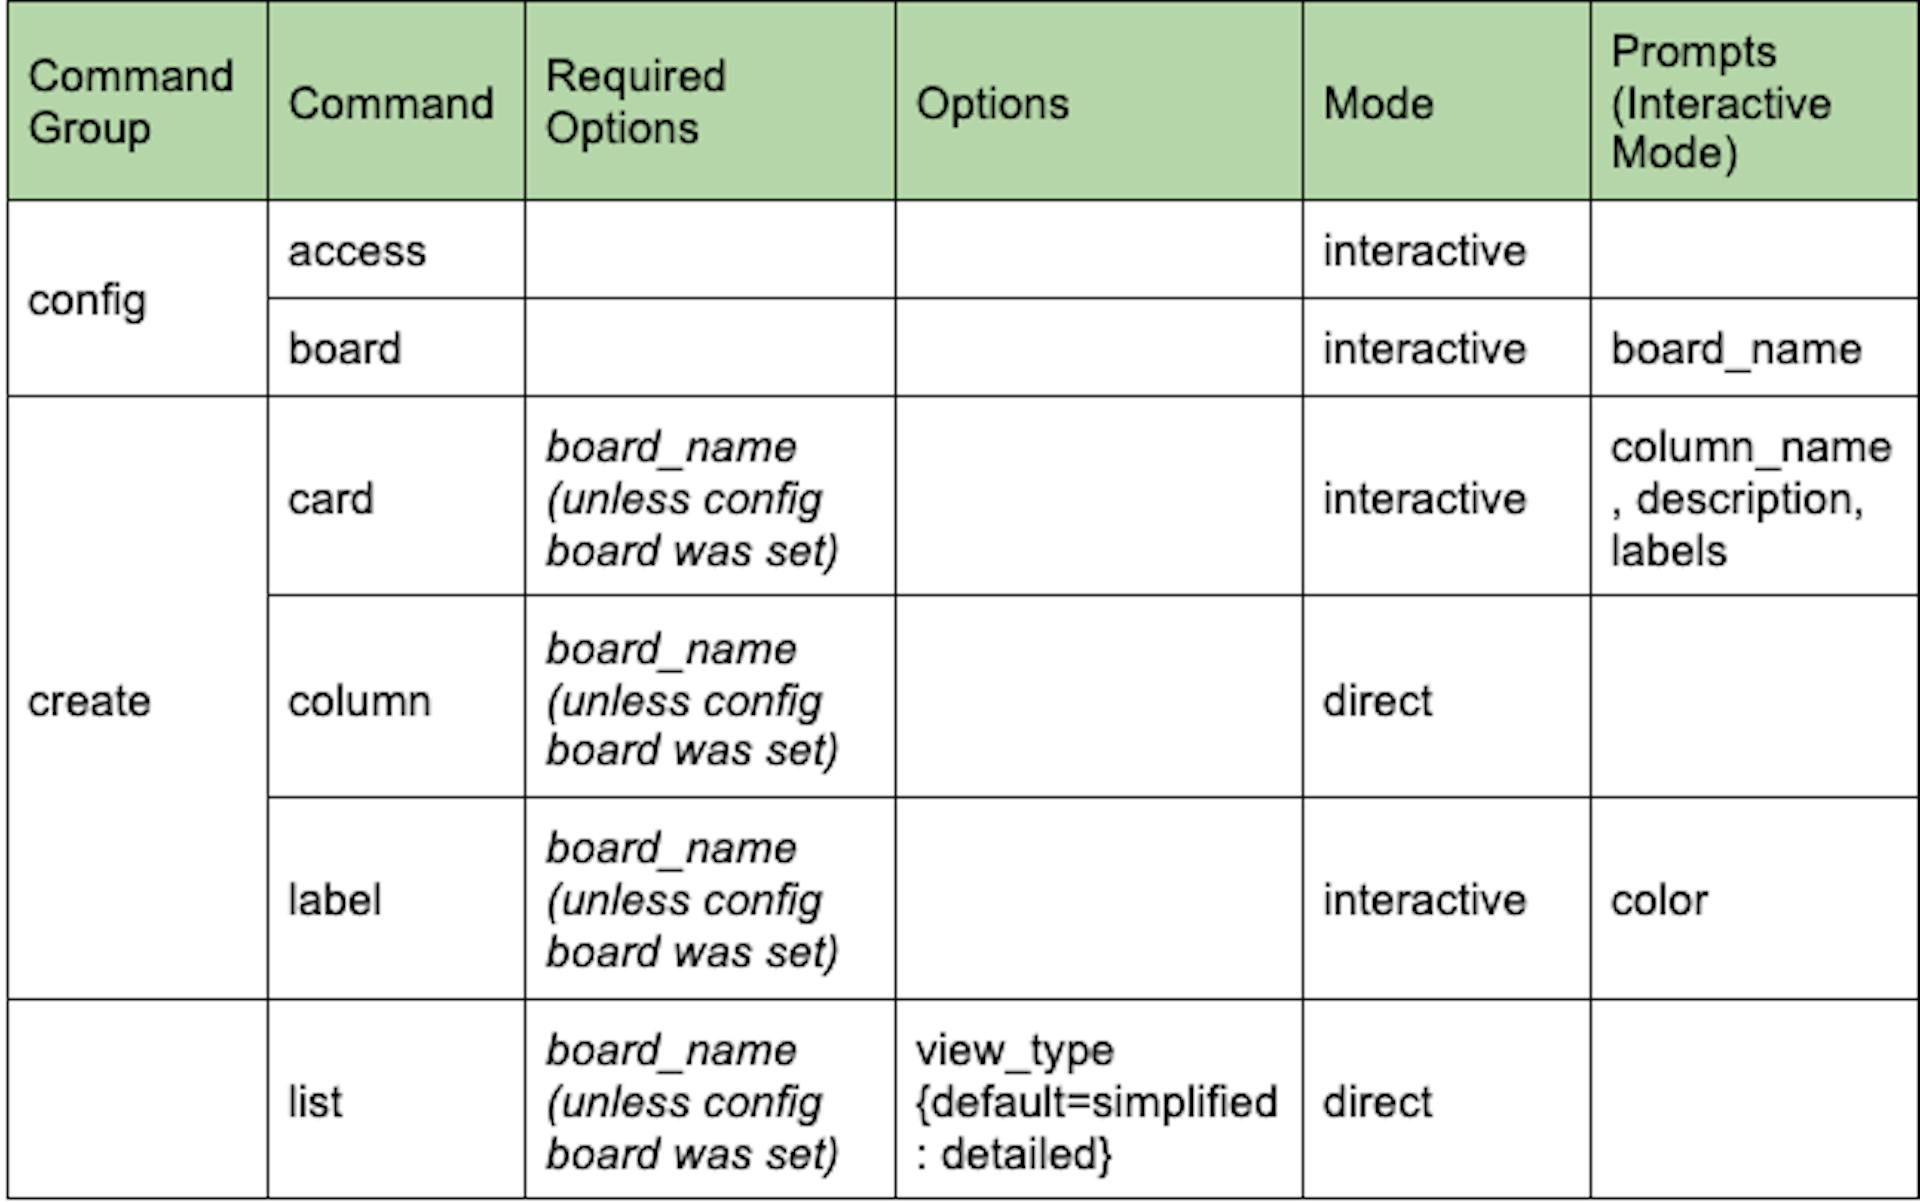 Vista de tabla detallada de la estructura CLI según los requisitos